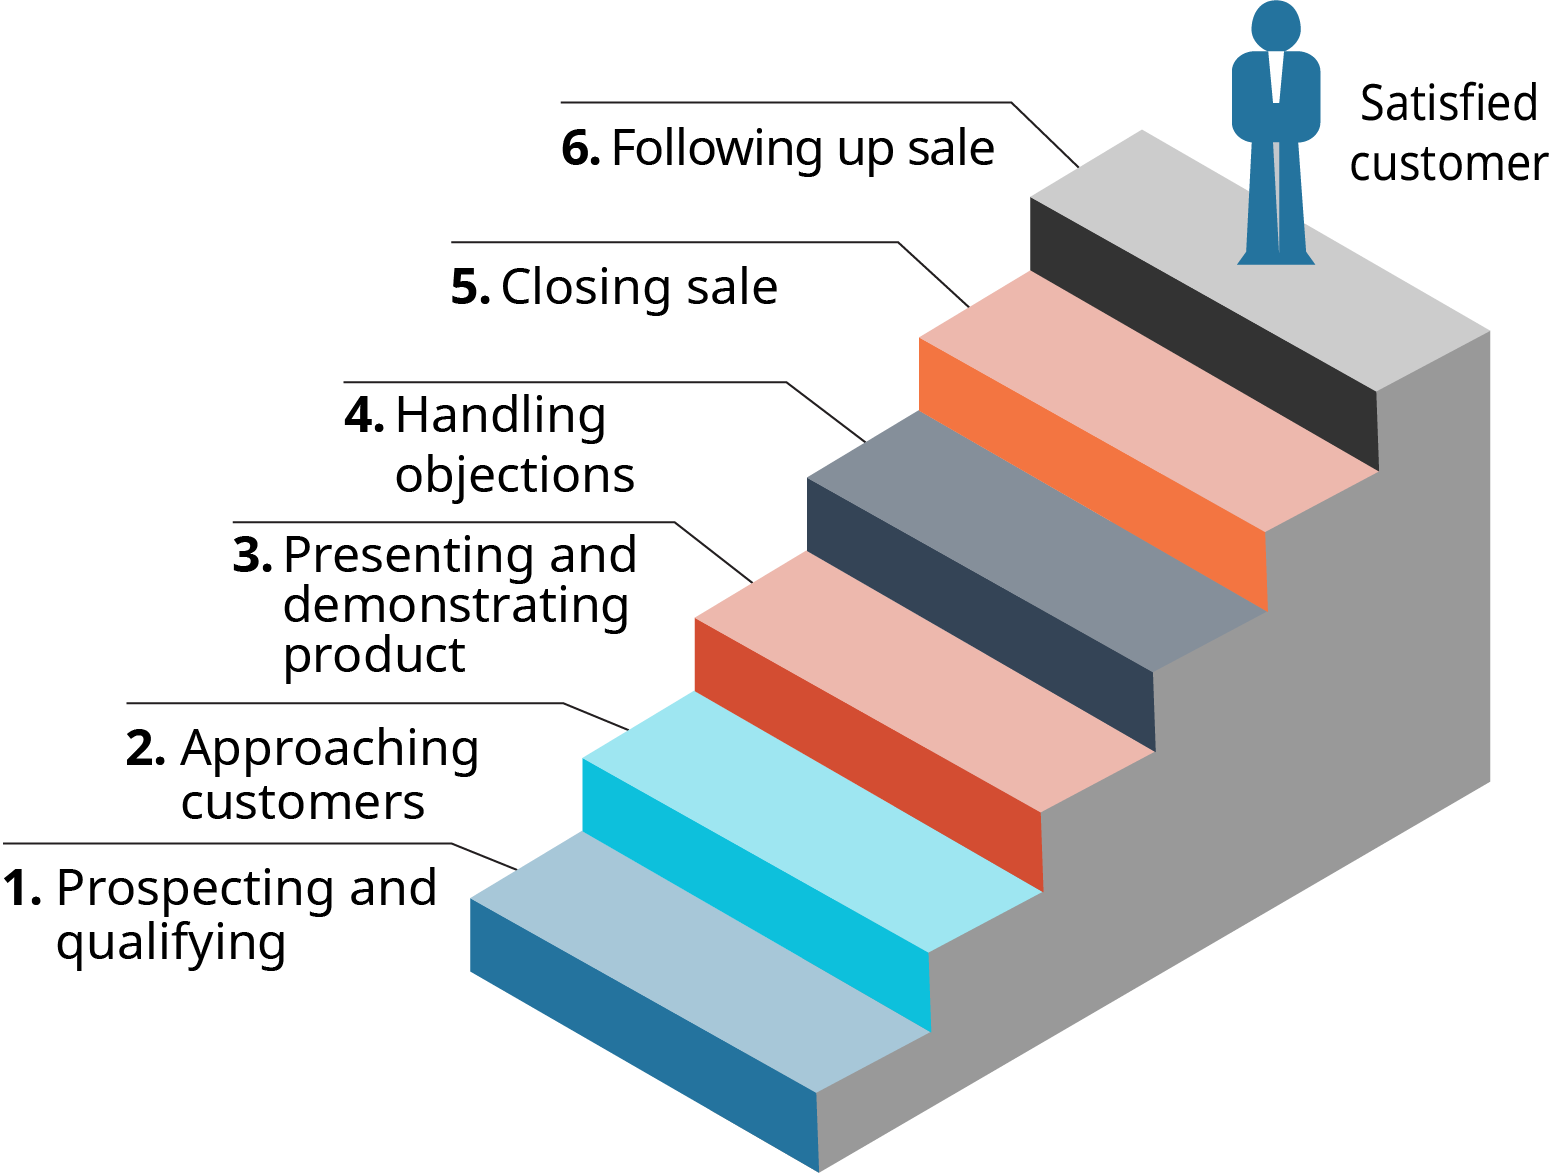 يوضح الرسم التخطيطي الخطوات الست في عملية البيع كدرج.